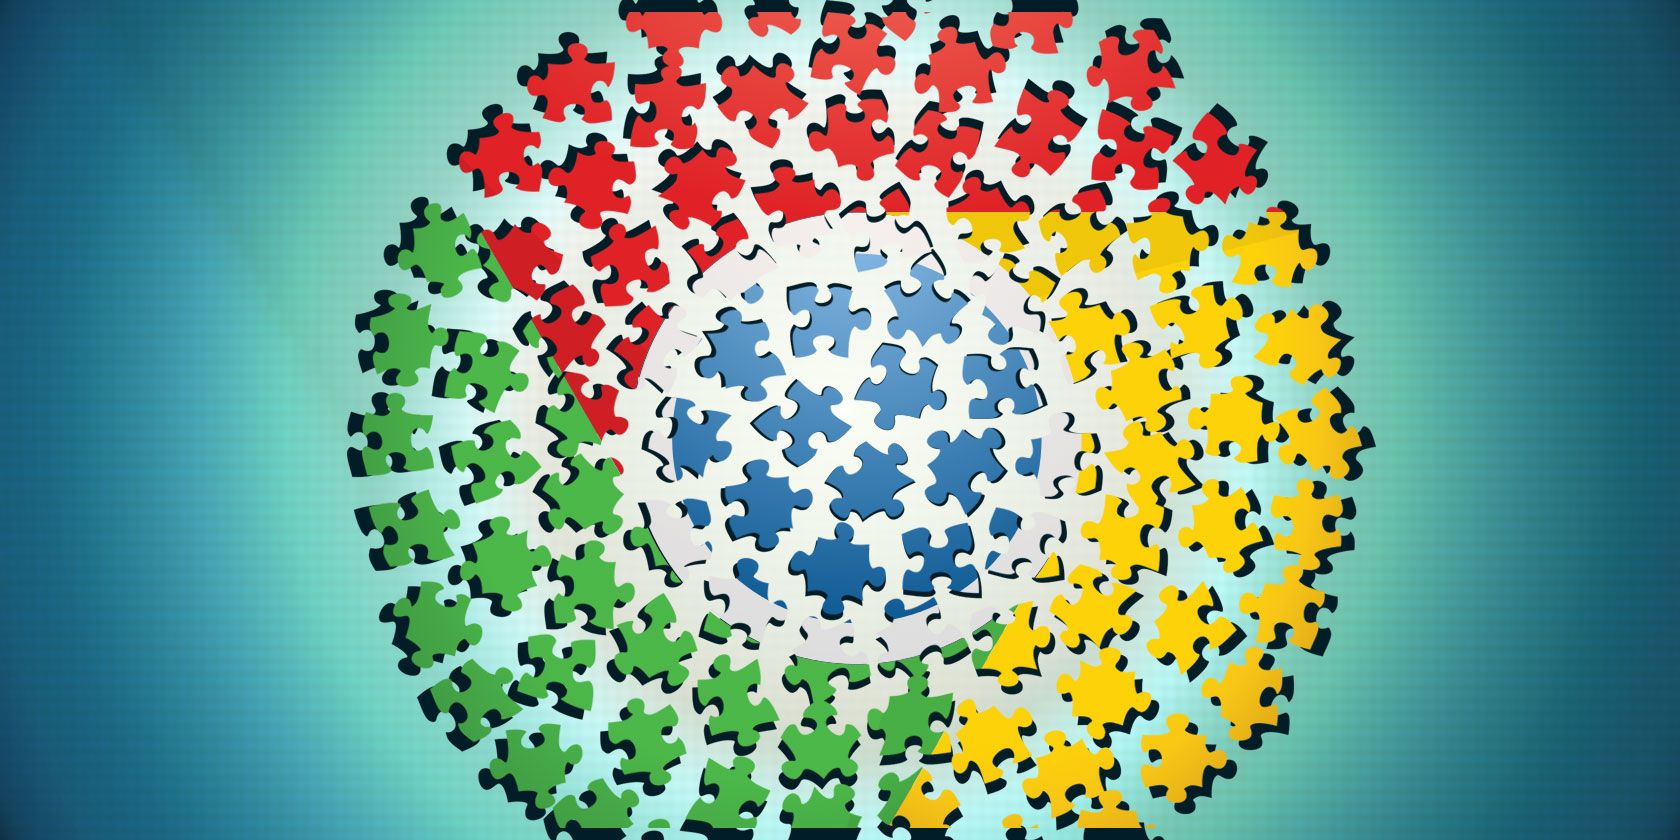 brain puzzle games